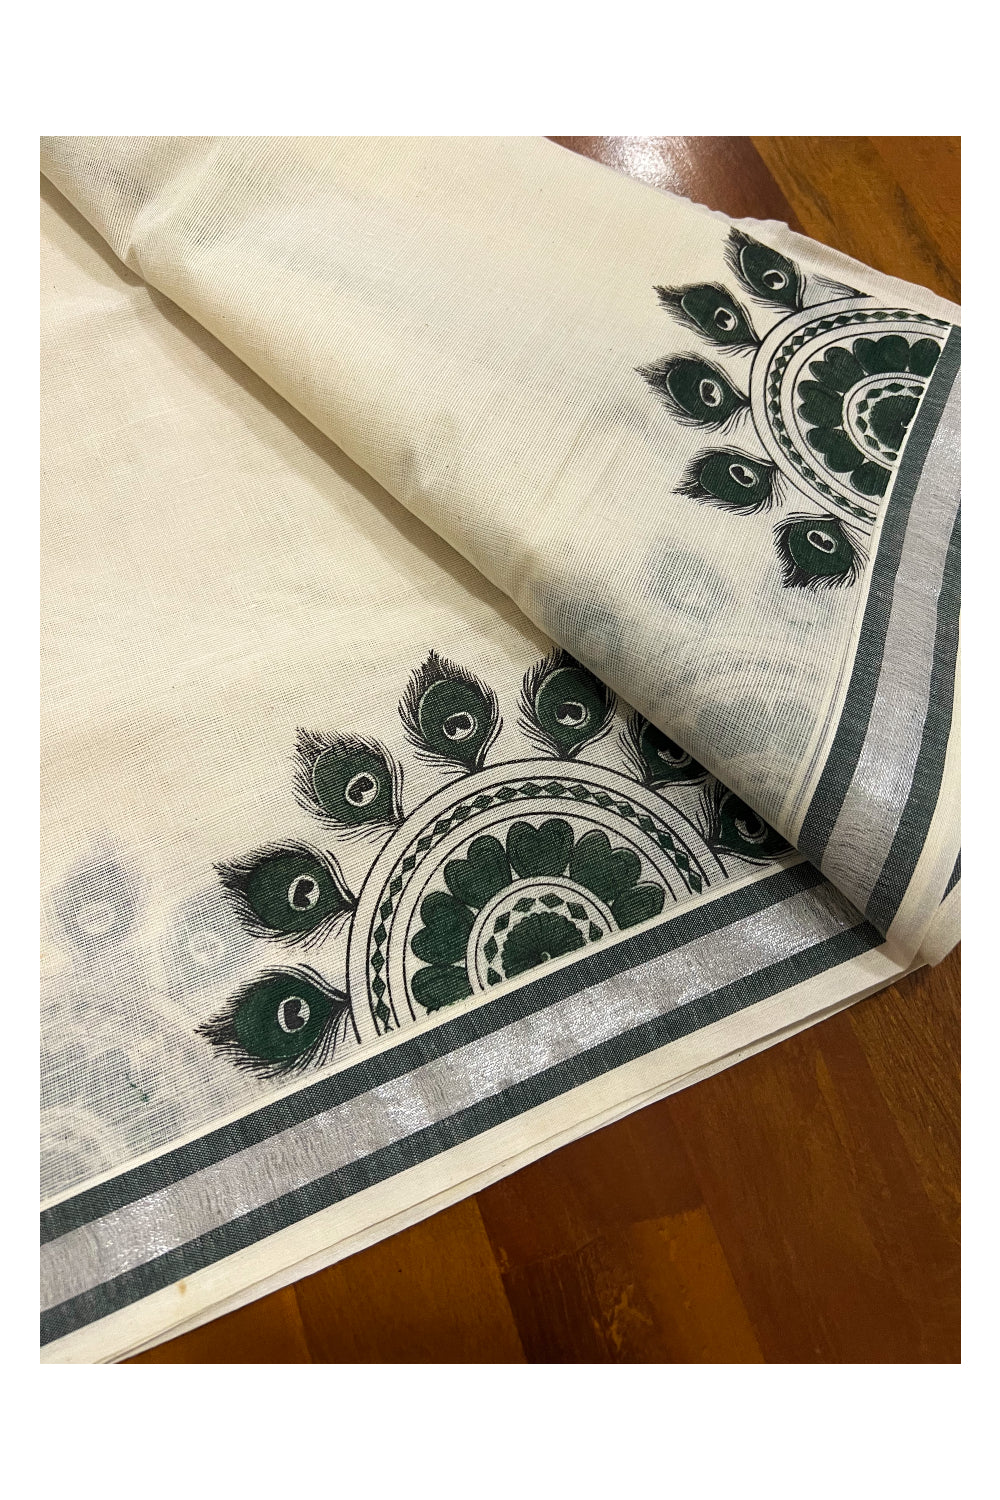 Kerala Cotton Silver Kasavu Set Mundu (Mundum Neriyathum) with Green Feather Semi Circle Block Prints